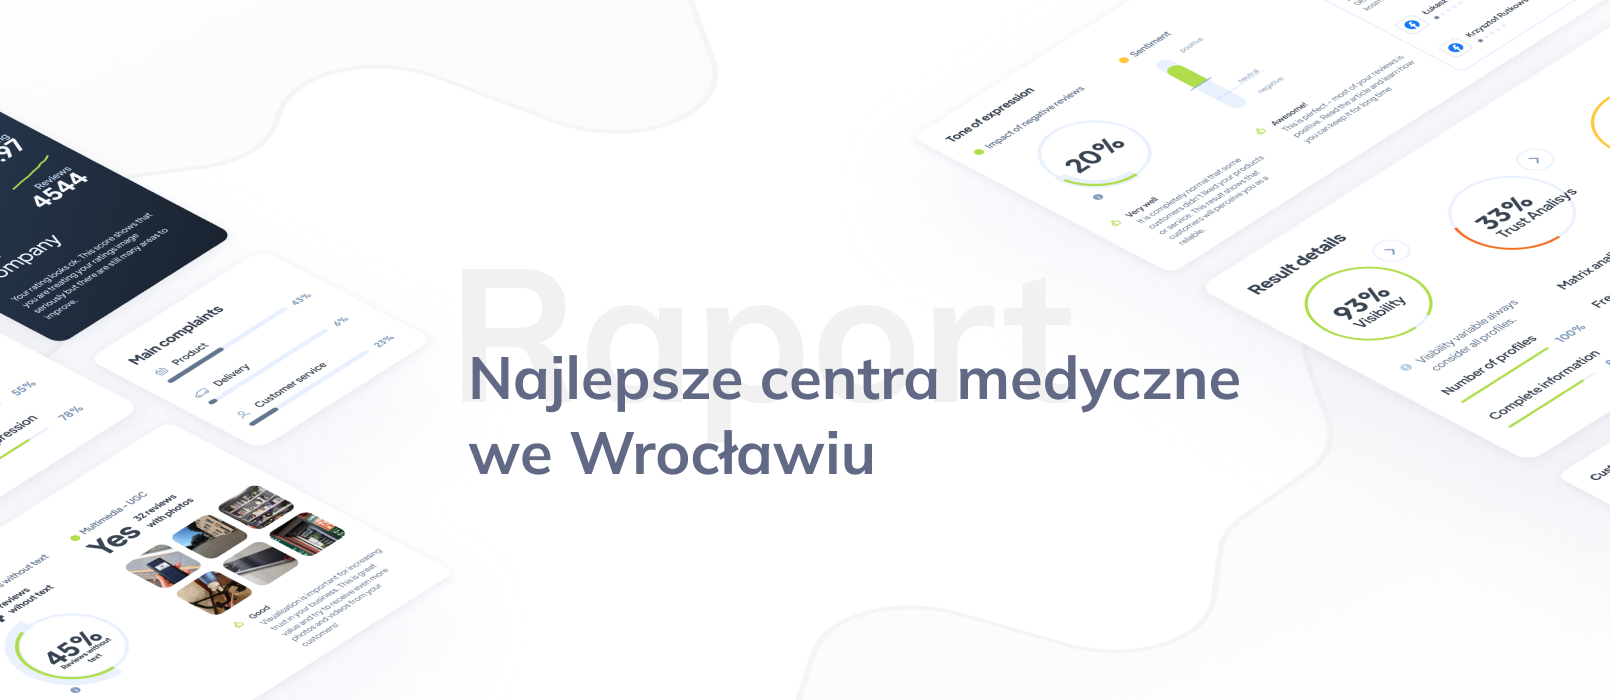 TOP 10: Najlepsze centra medyczne we Wrocławiu – ranking opinii klientów